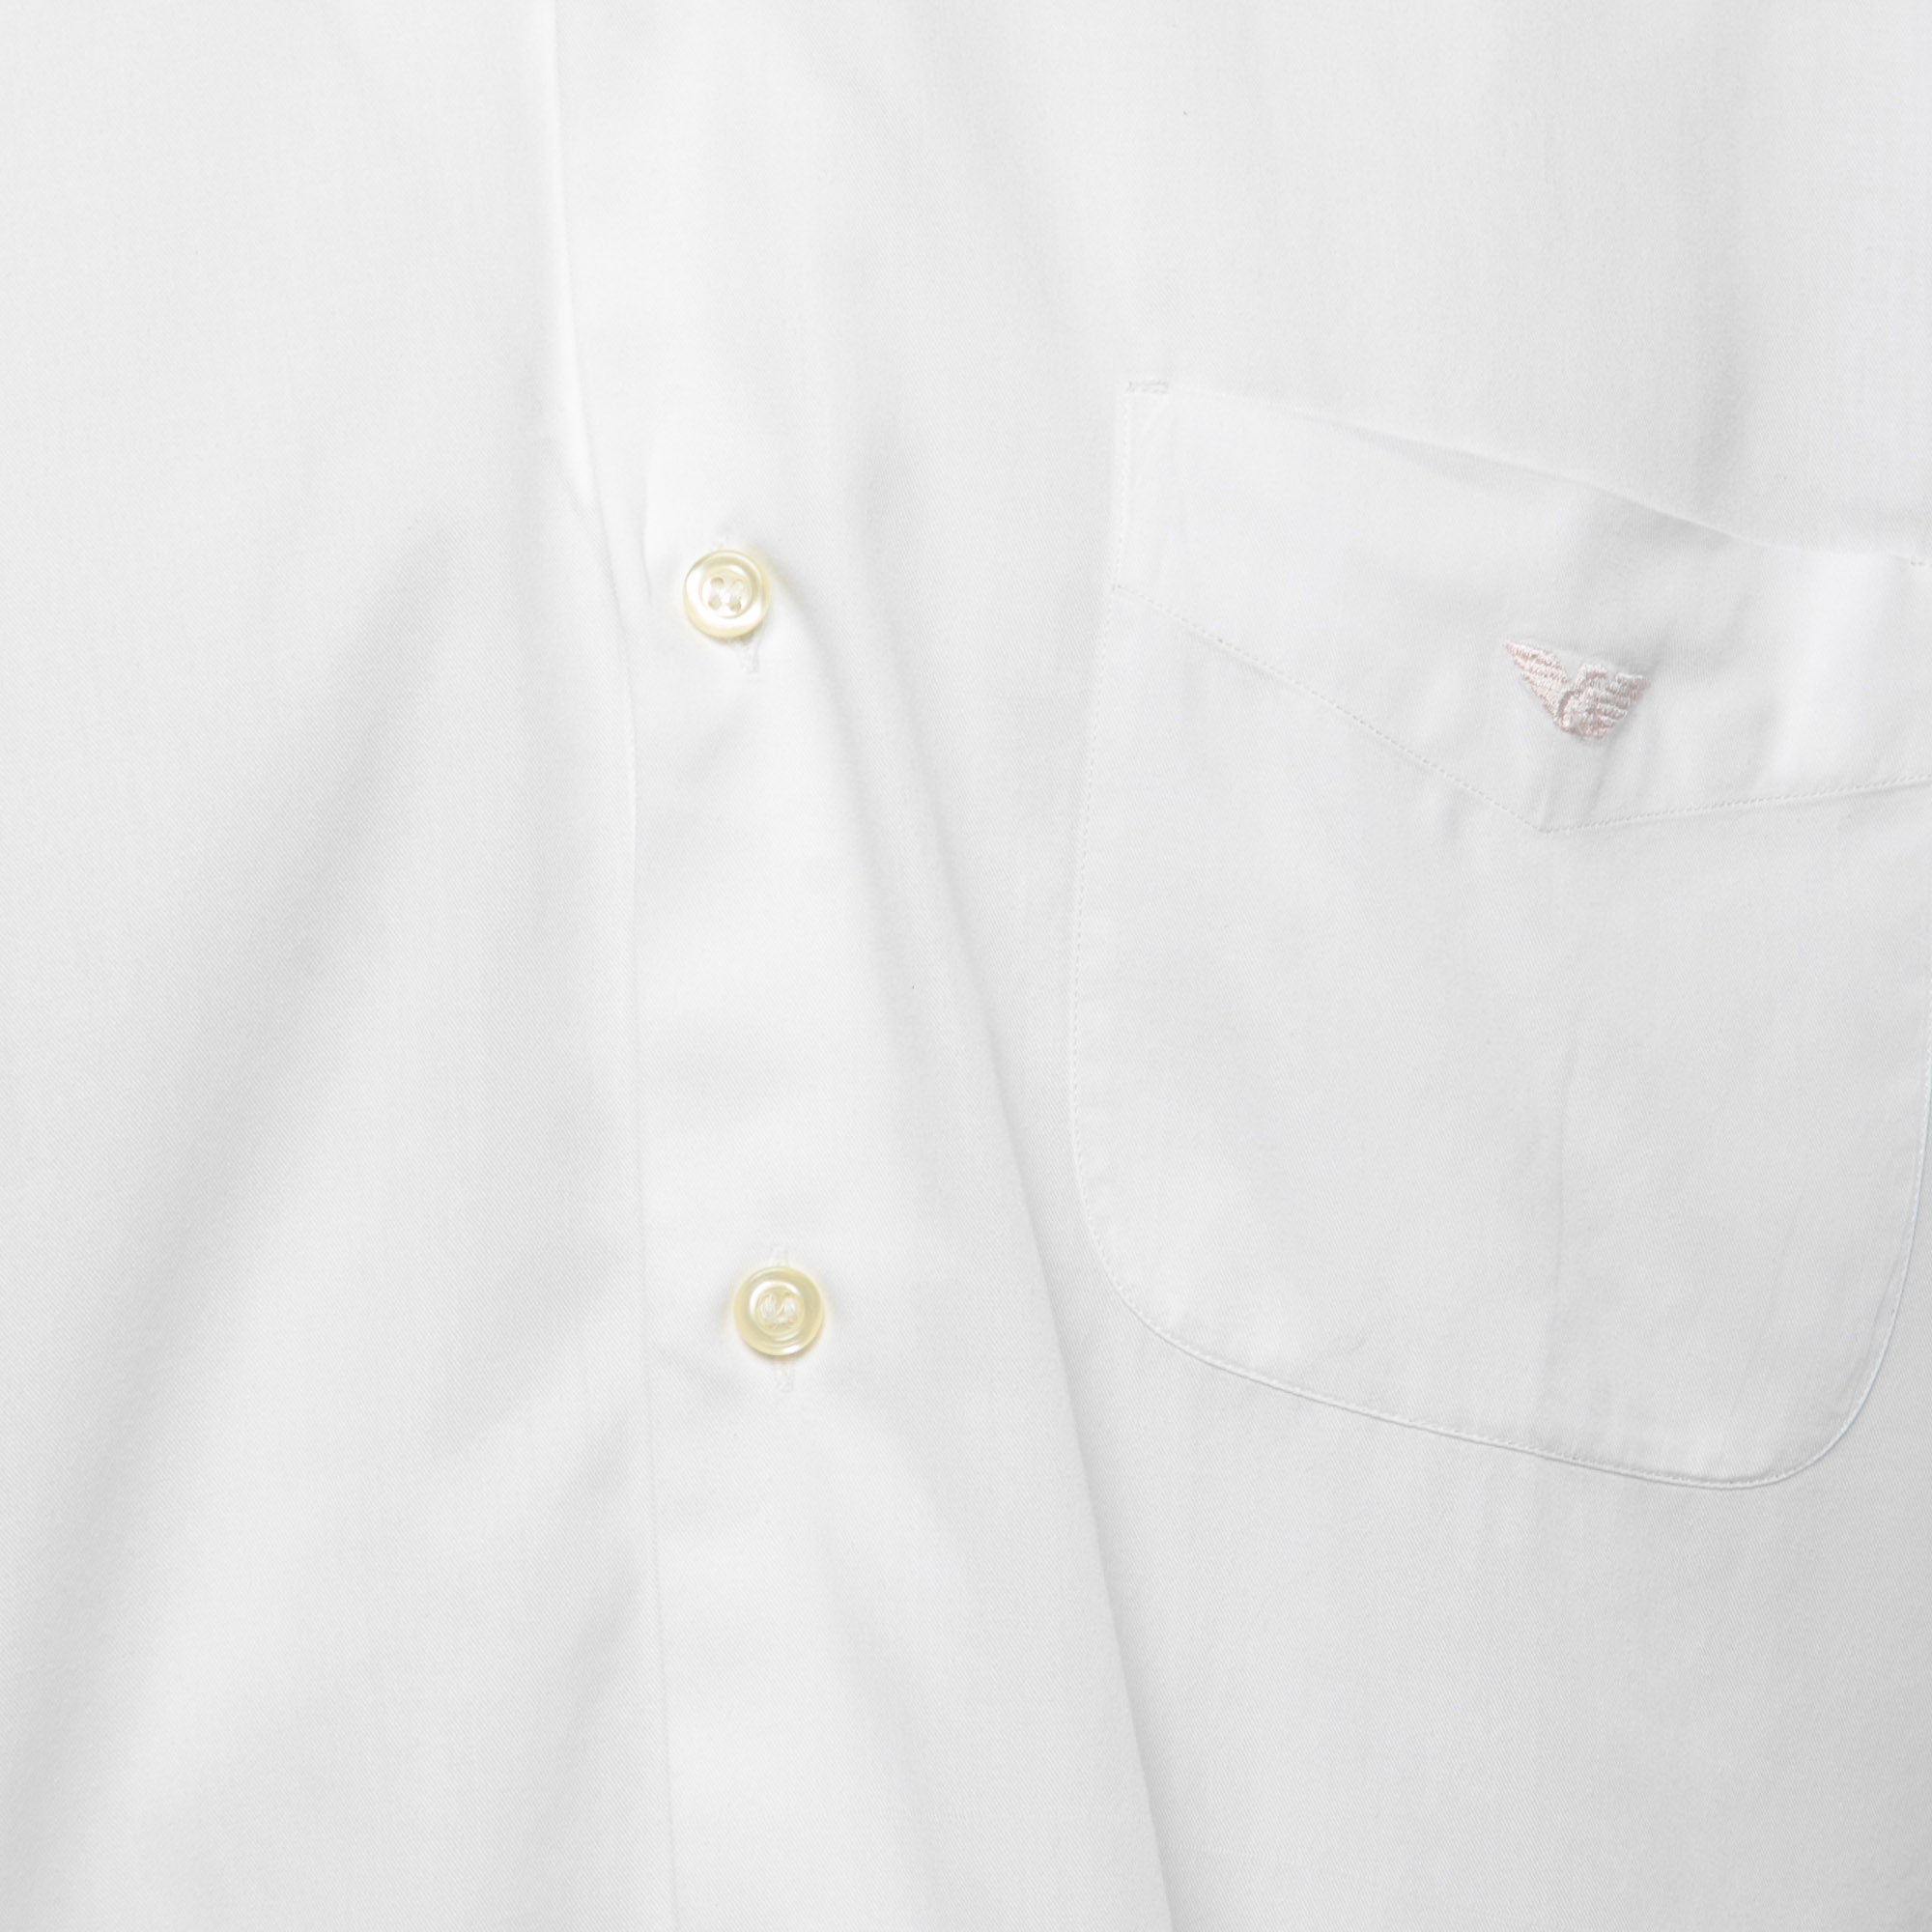 Emporio Armani White Cotton Button Down Full Sleeve Shirt M